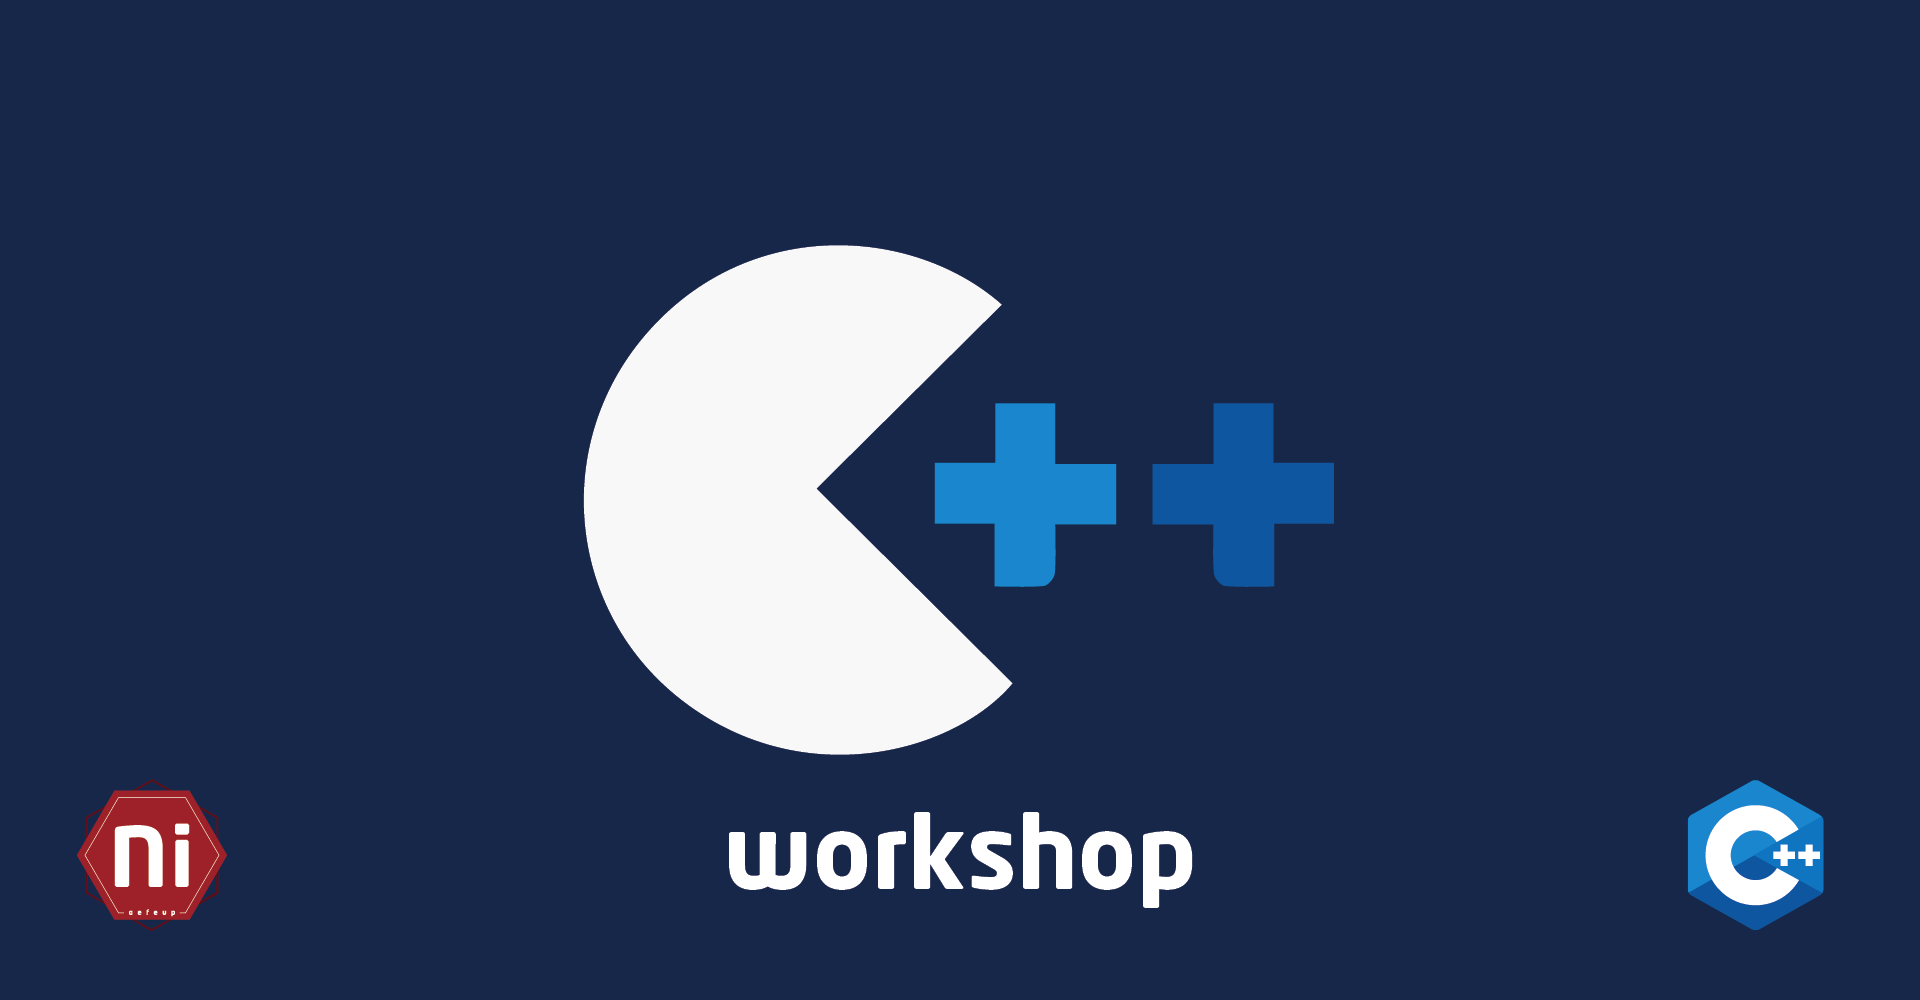 Workshop de C++ 2018